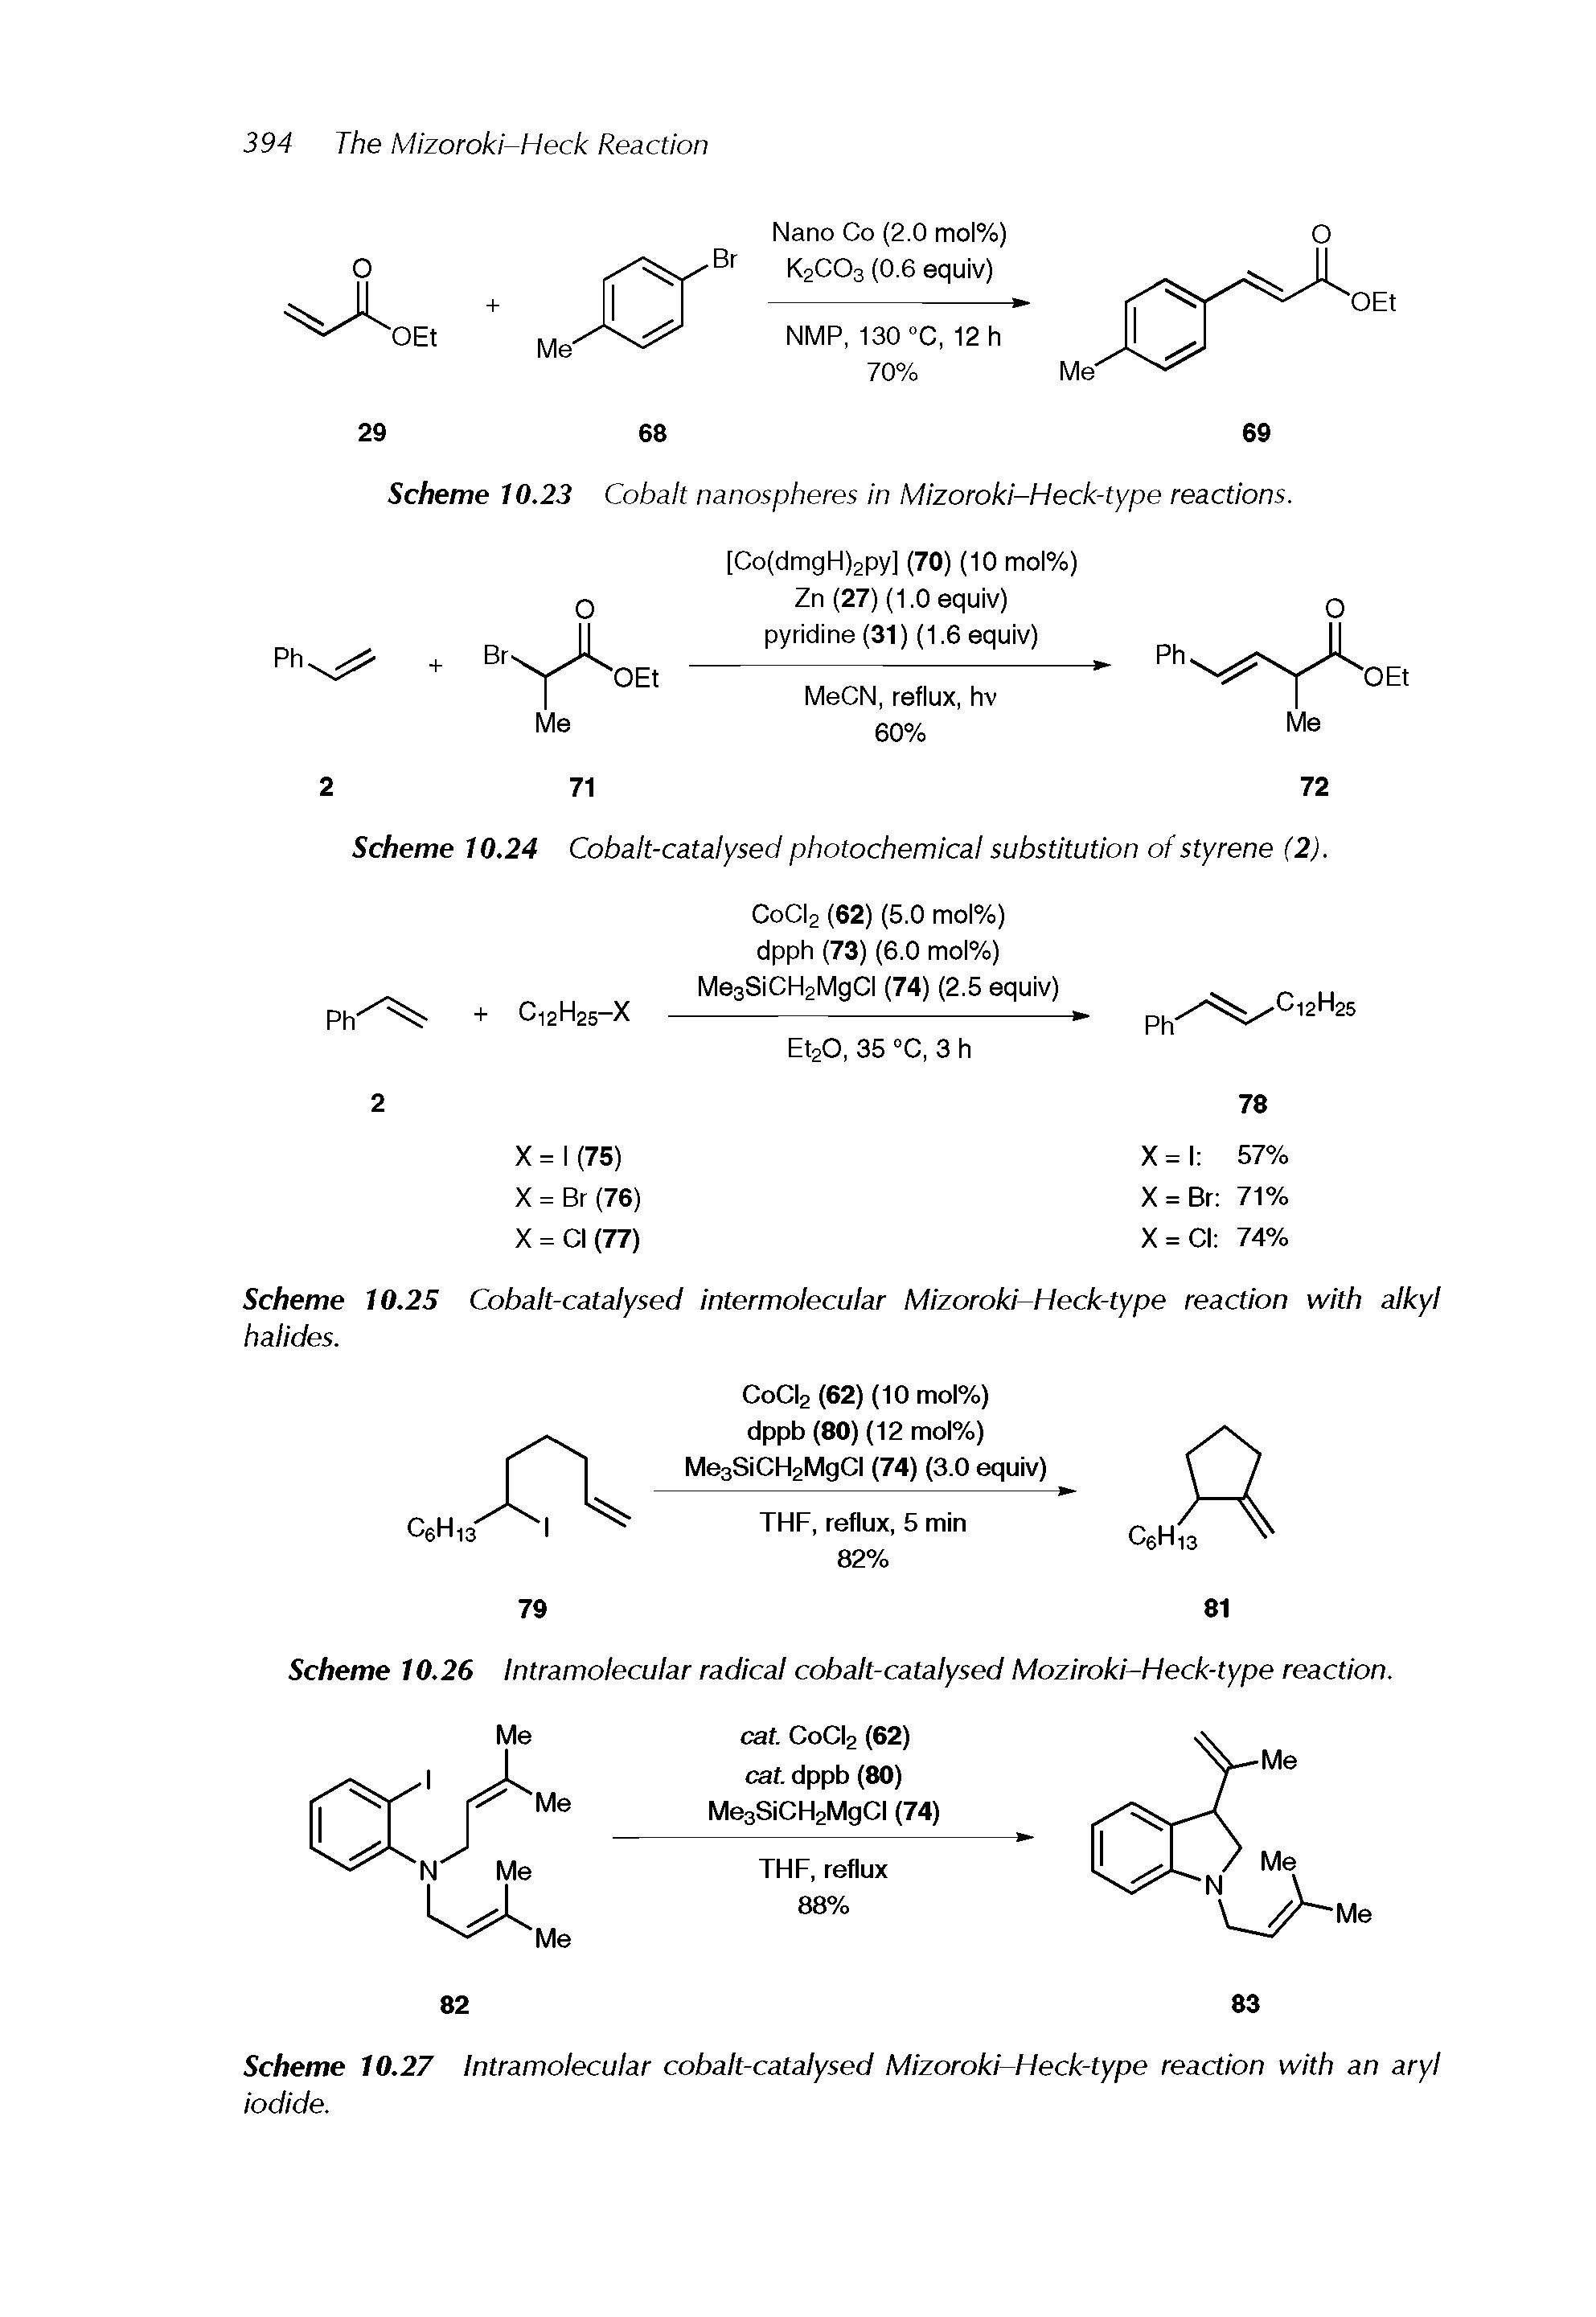 Scheme 10.25 Cobalt-catalysed intermolecular Mizoroki-Heck-type reaction with alkyl halides.